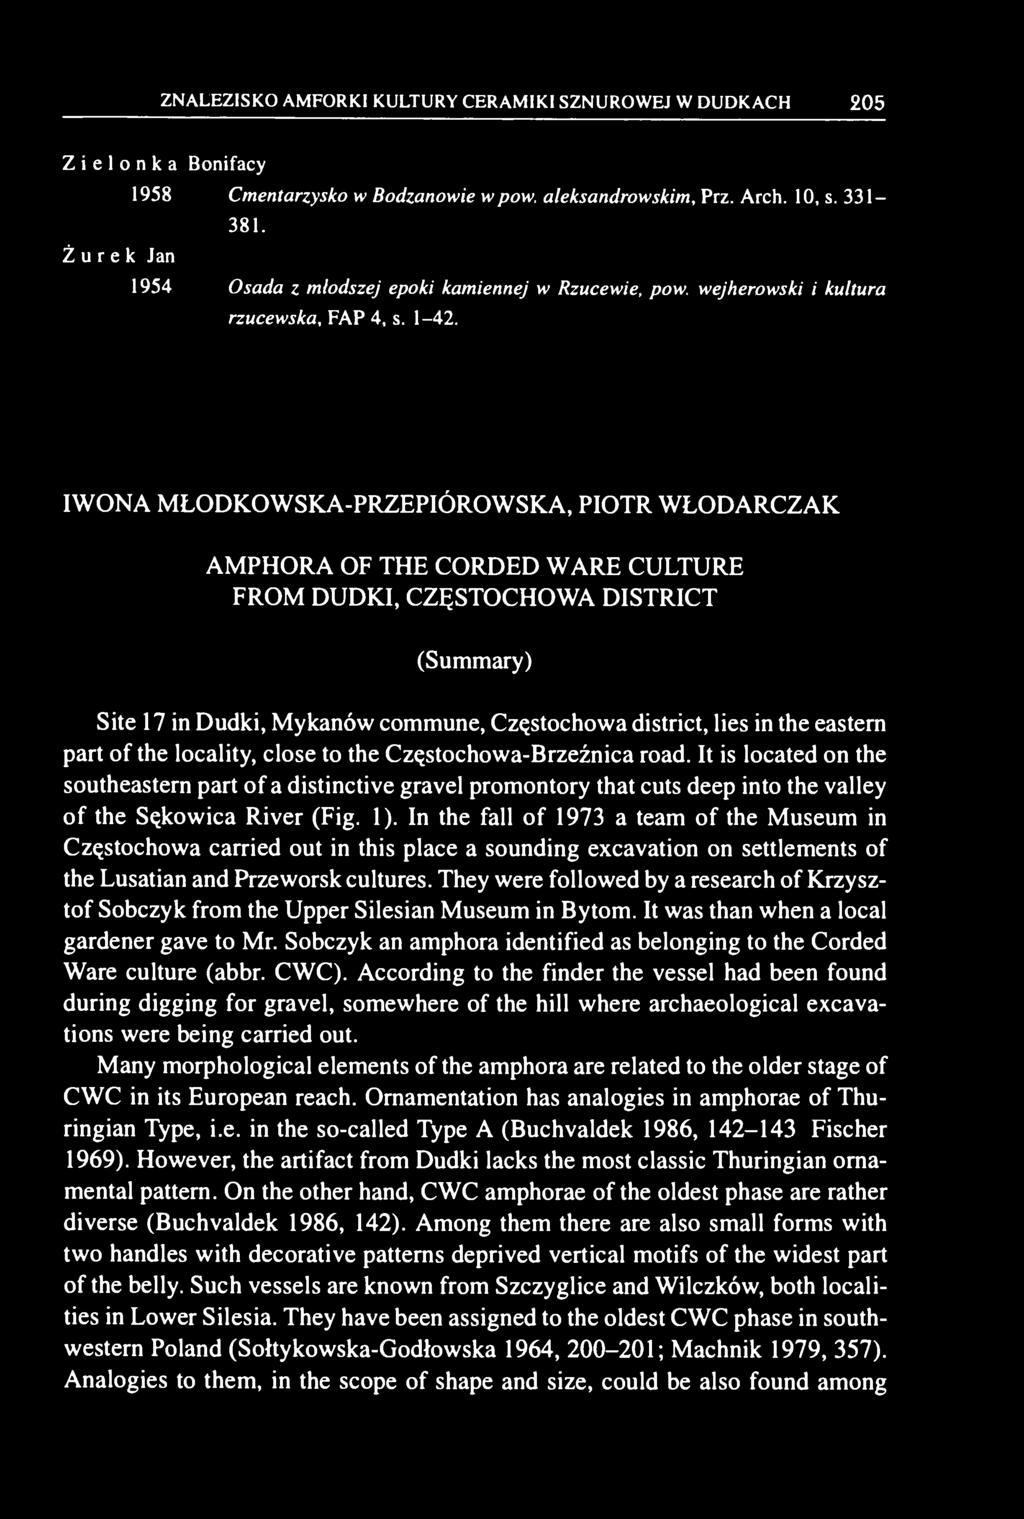 IWONA MŁODKOWSKA-PRZEPIÓROWSKA, PIOTR WŁODARCZAK AMPHORA OF THE CORDED WARE CULTURE FROM DUDKI, CZĘSTOCHOWA DISTRICT (Summary) Site 17 in Dudki, Mykanów commune, Częstochowa district, lies in the